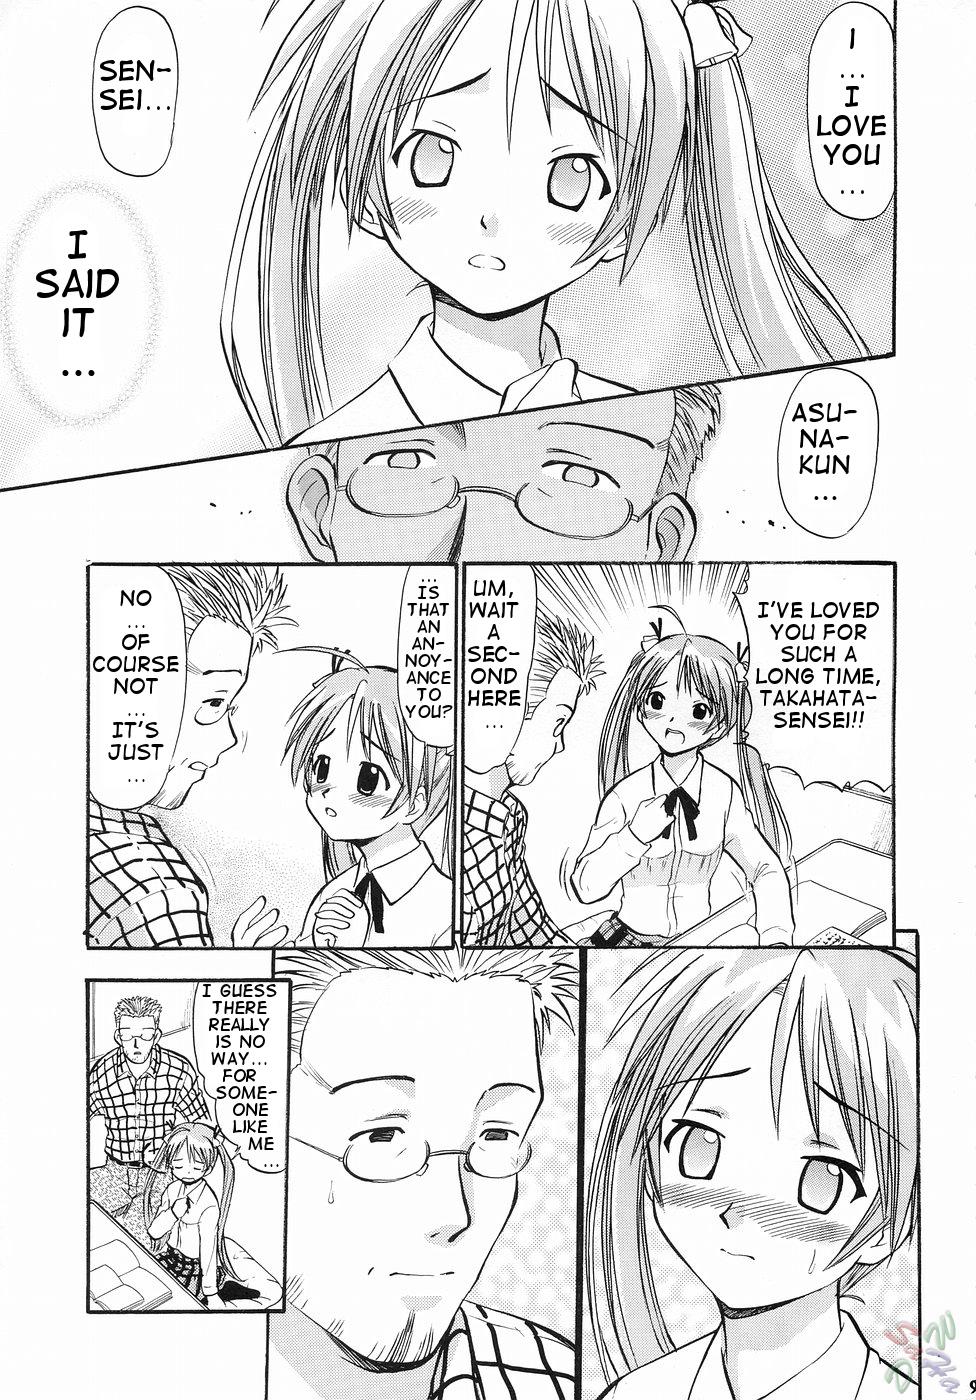 Best Blowjobs Asuna no Koisuru Heart - Mahou sensei negima  - Page 8